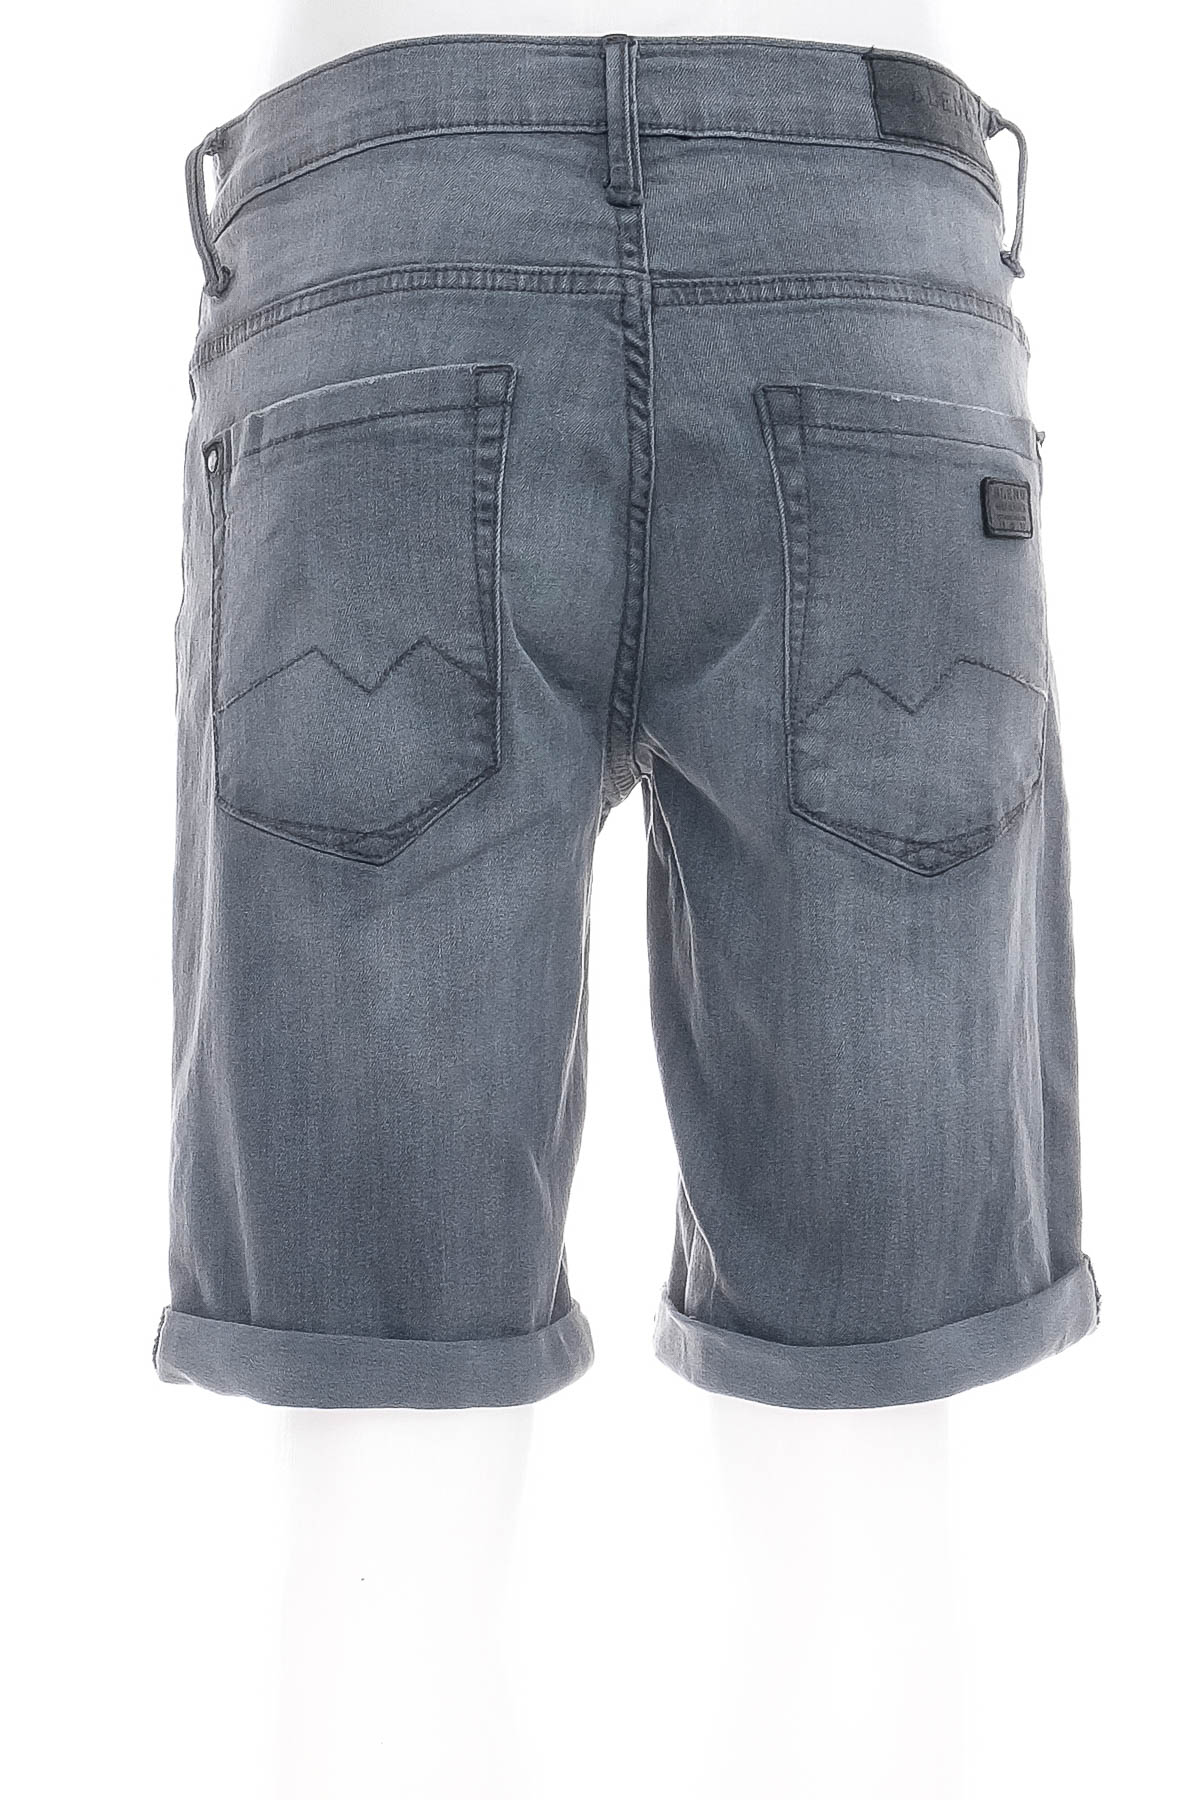 Pantaloni scurți bărbați - Blend - 1